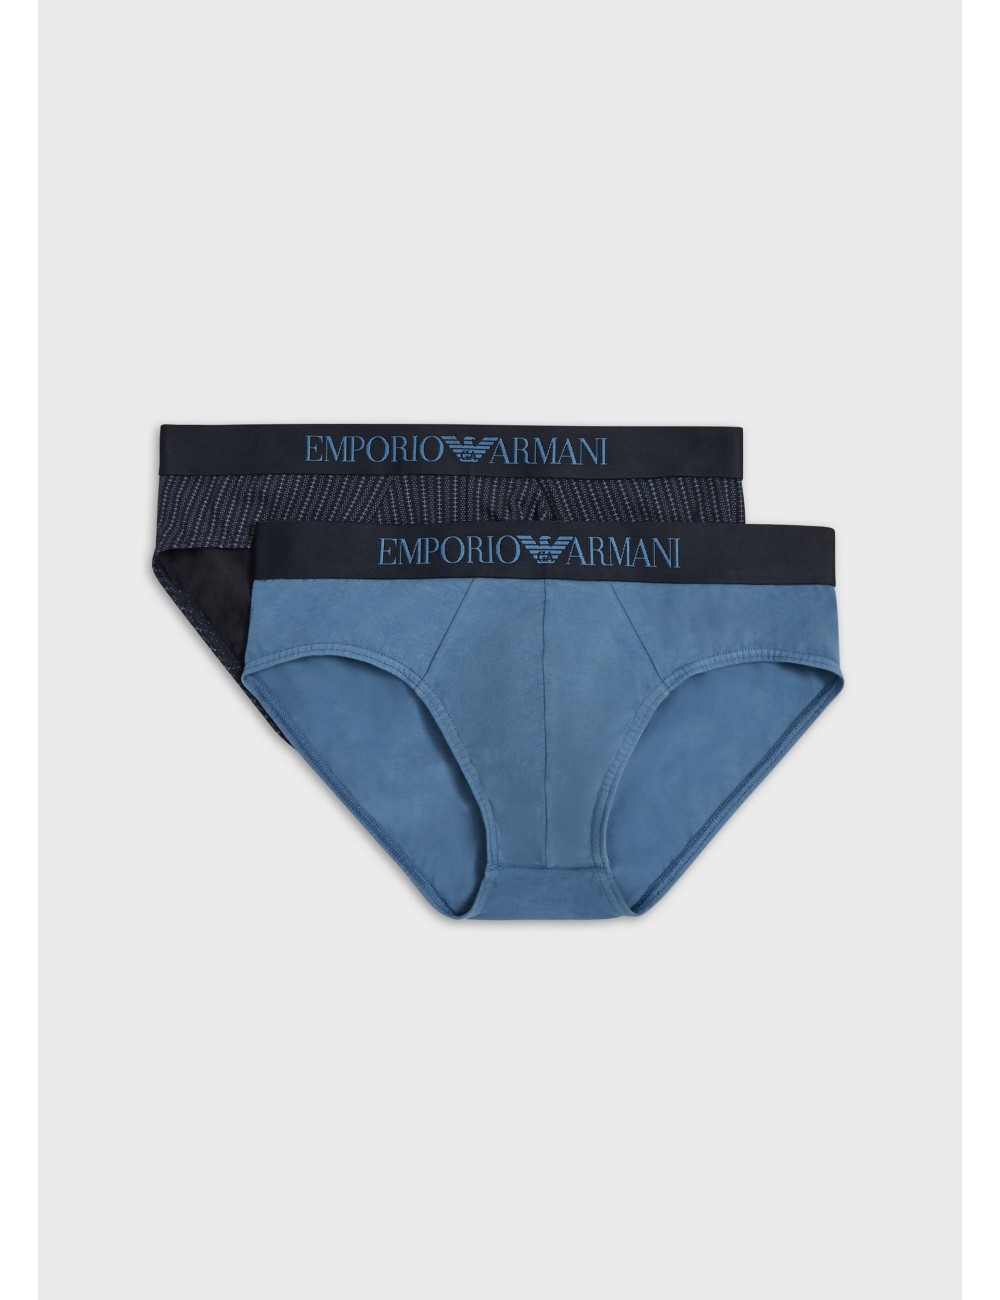 SlipEmporio Armani in Cotone da Uomo colore Blu Uomo Abbigliamento da Intimo da Mutande boxer 